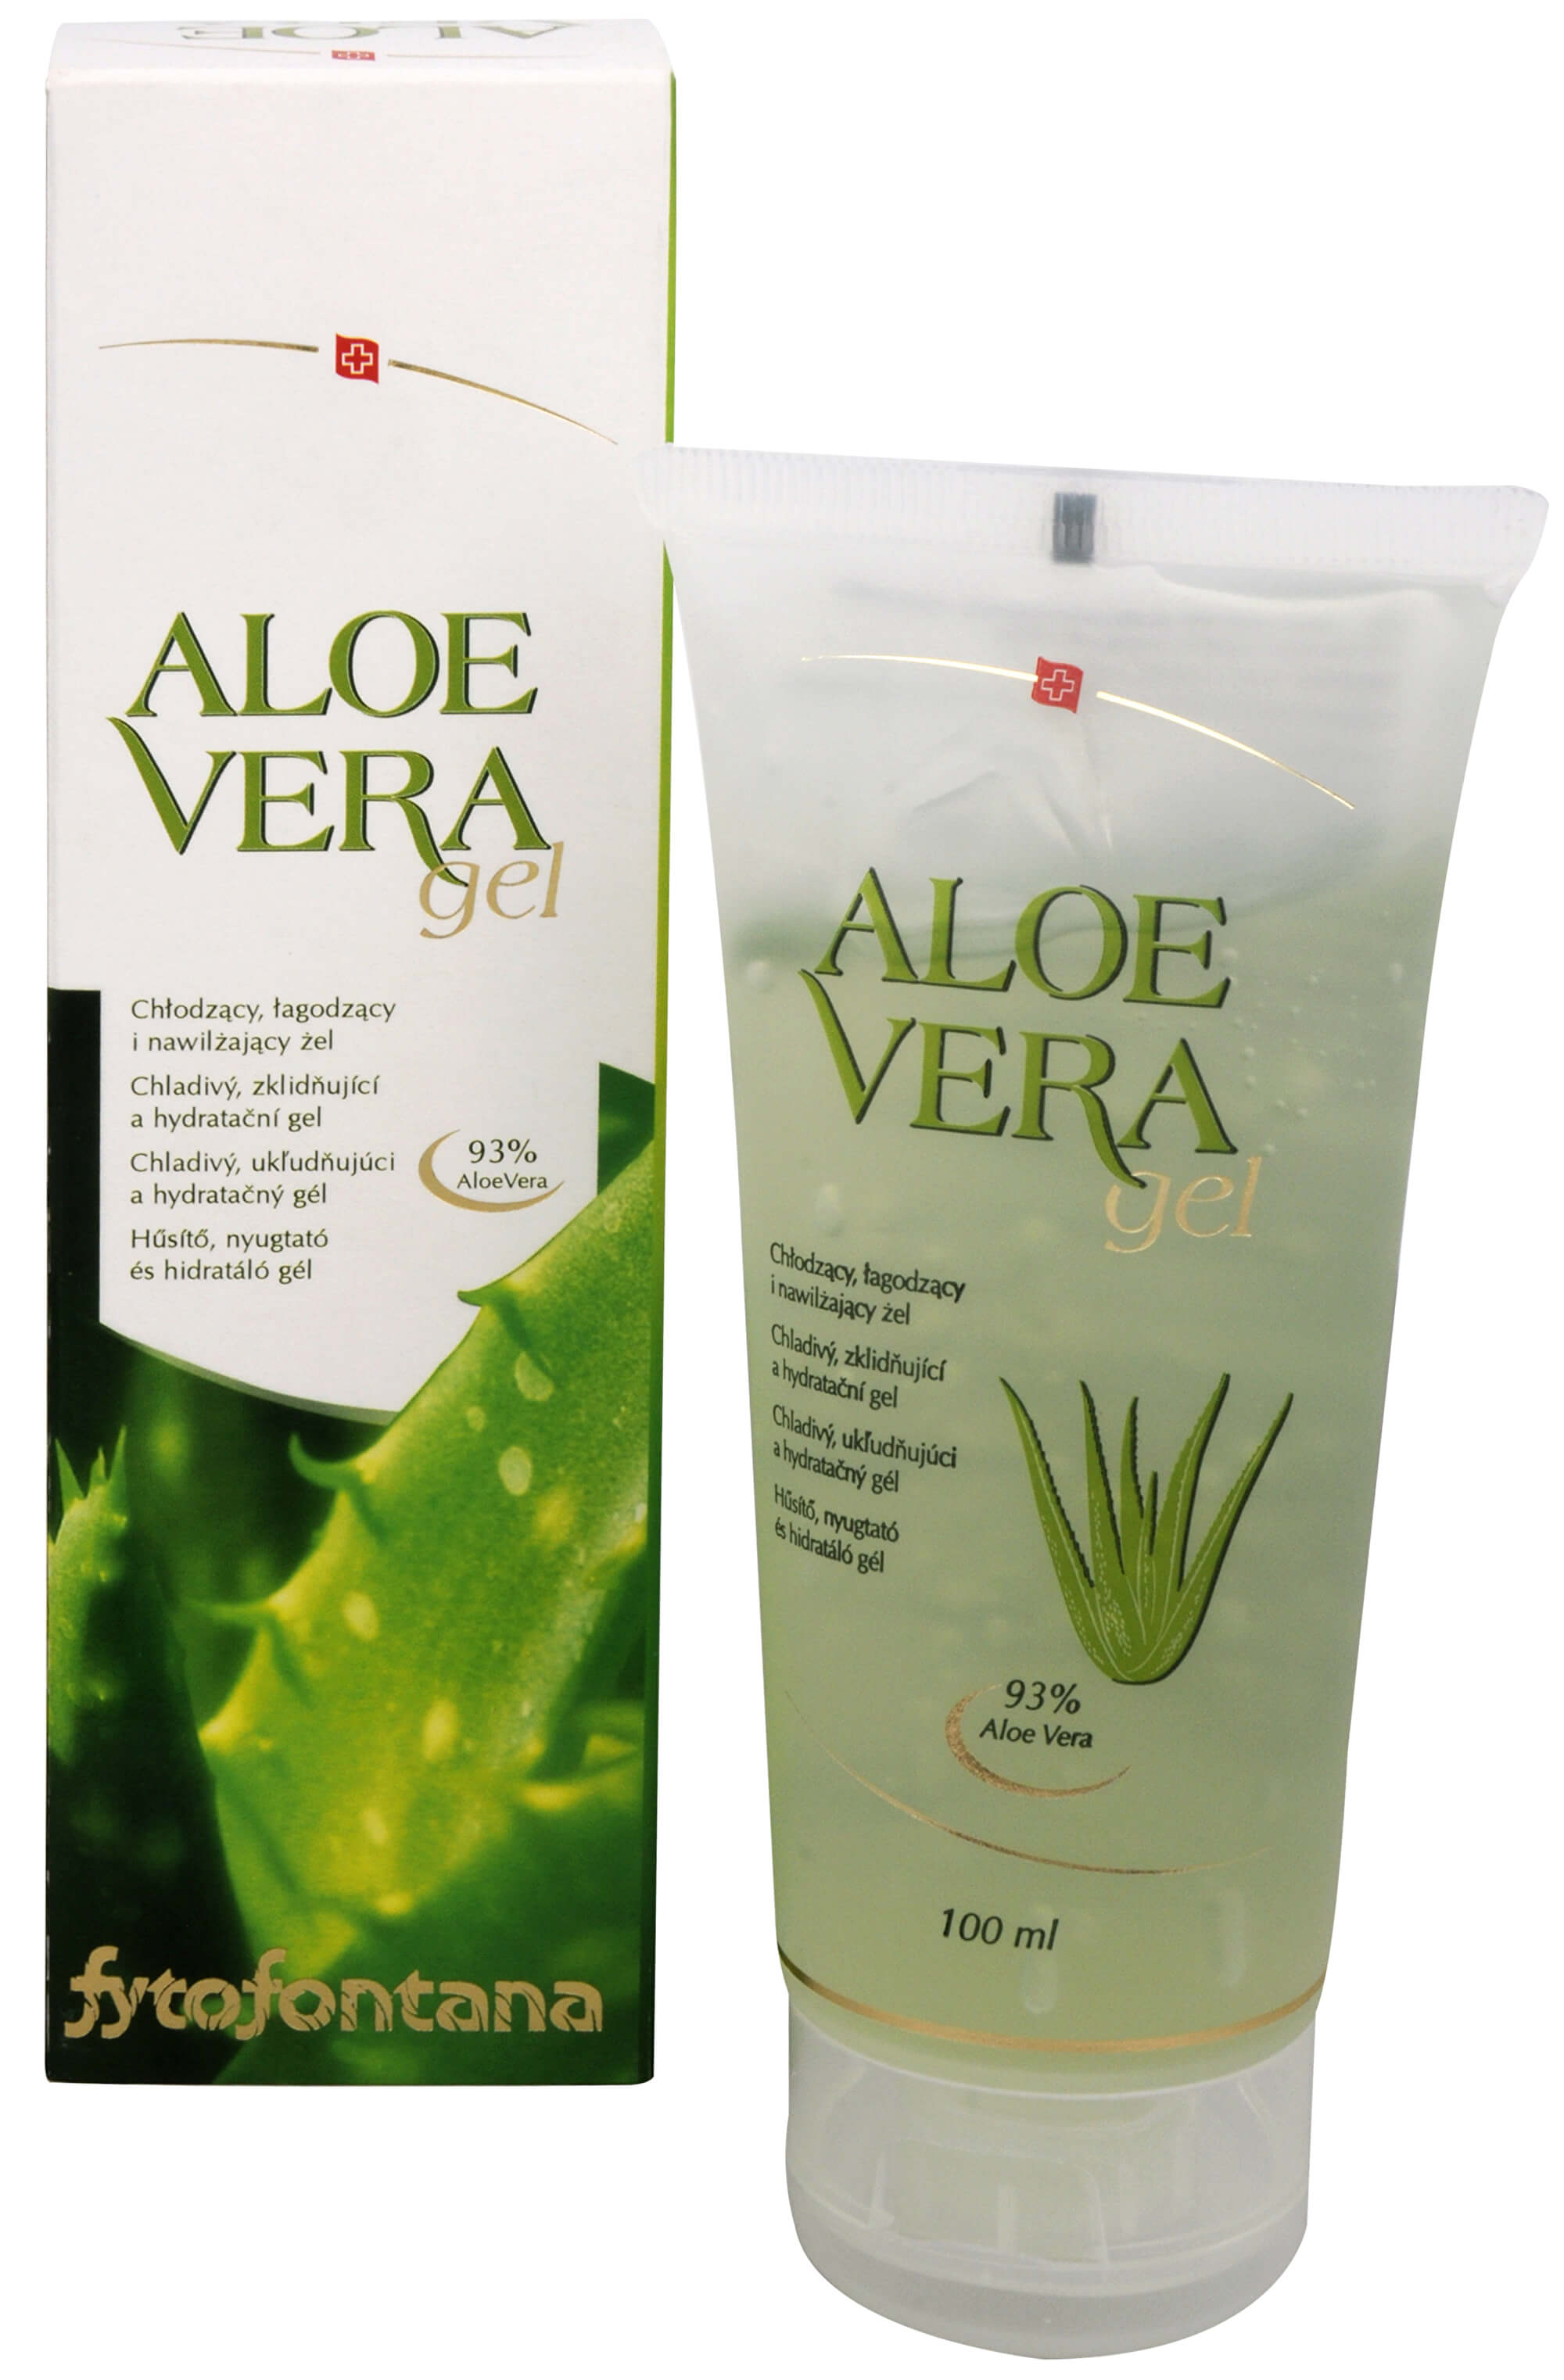 Zobrazit detail výrobku Fytofontana Aloe vera gel 100 ml + 2 měsíce na vrácení zboží